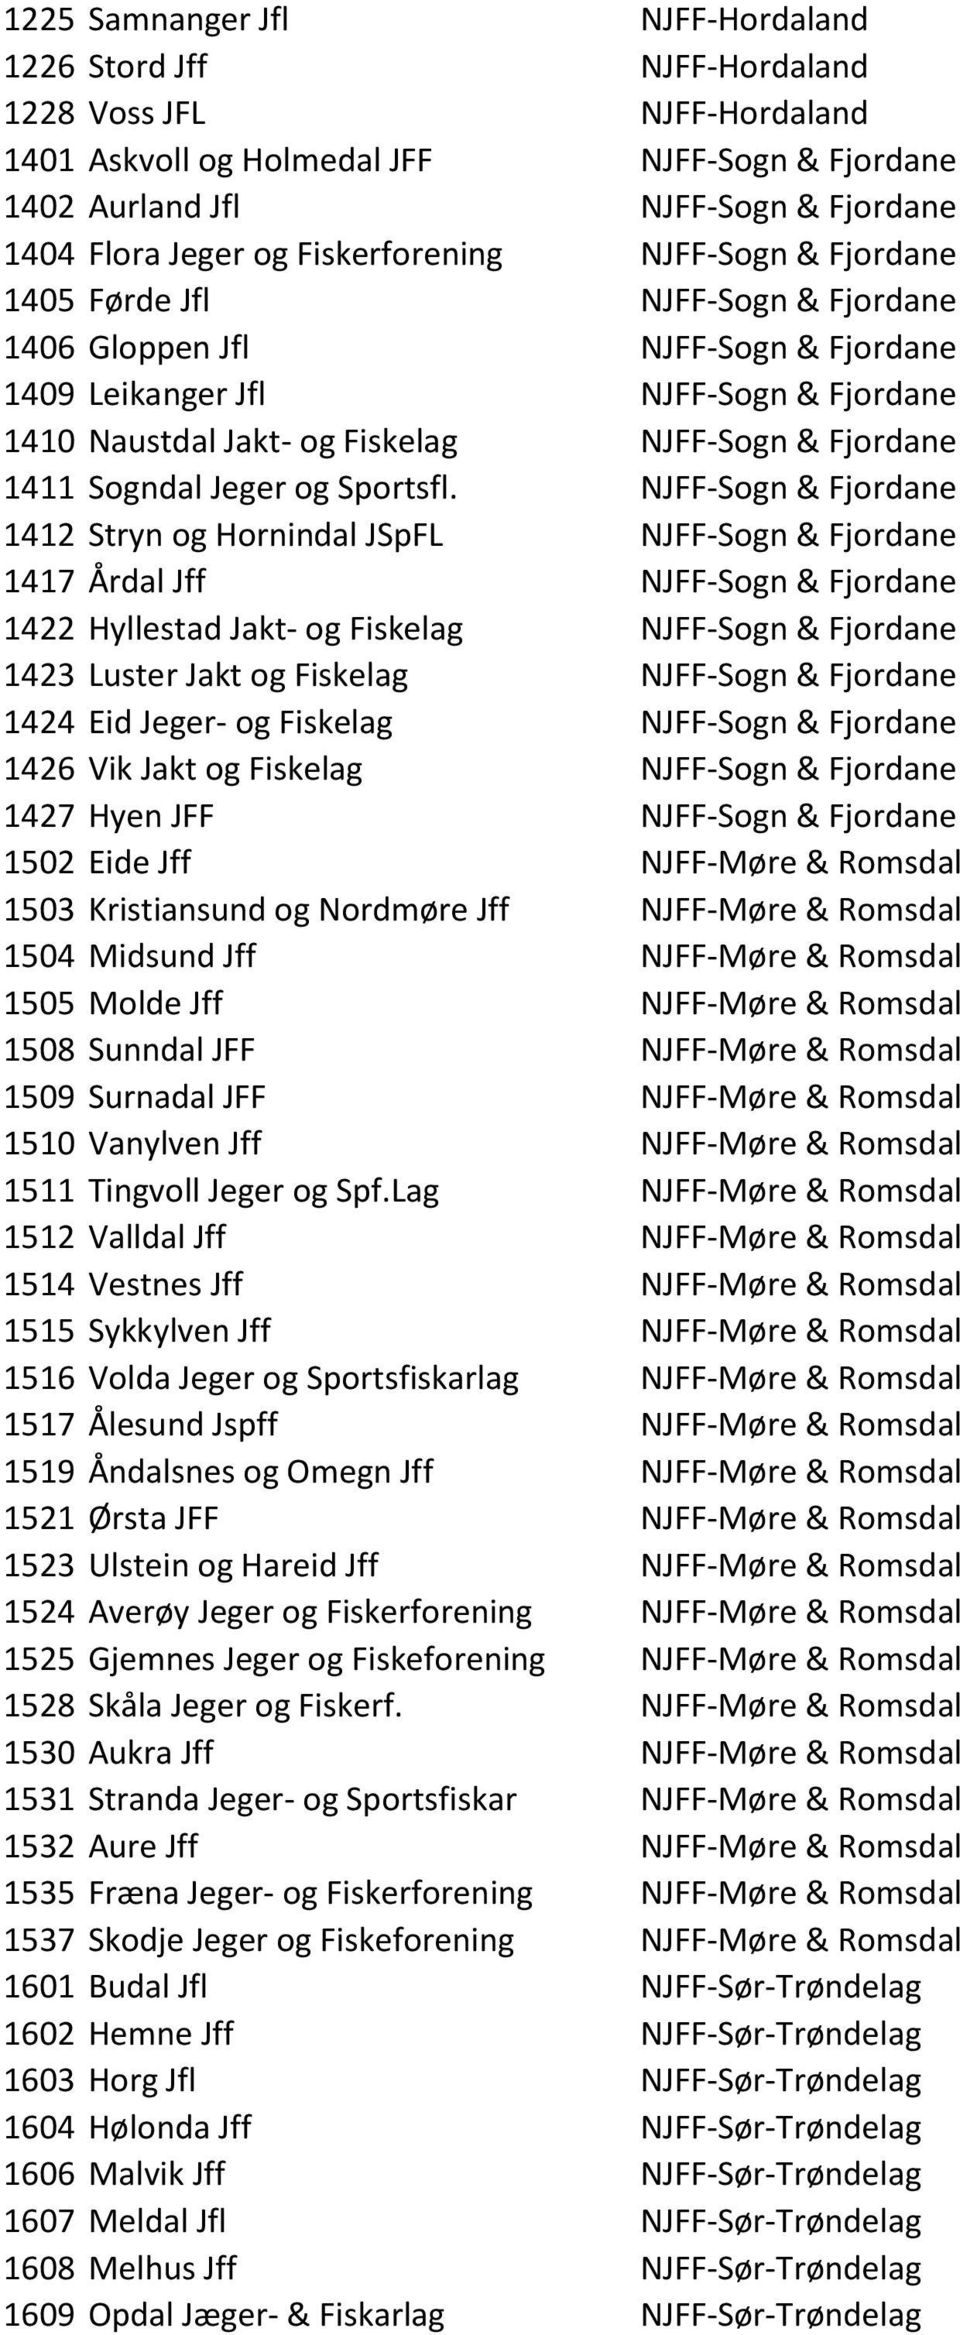 Fjordane 1411 Sogndal Jeger og Sportsfl.